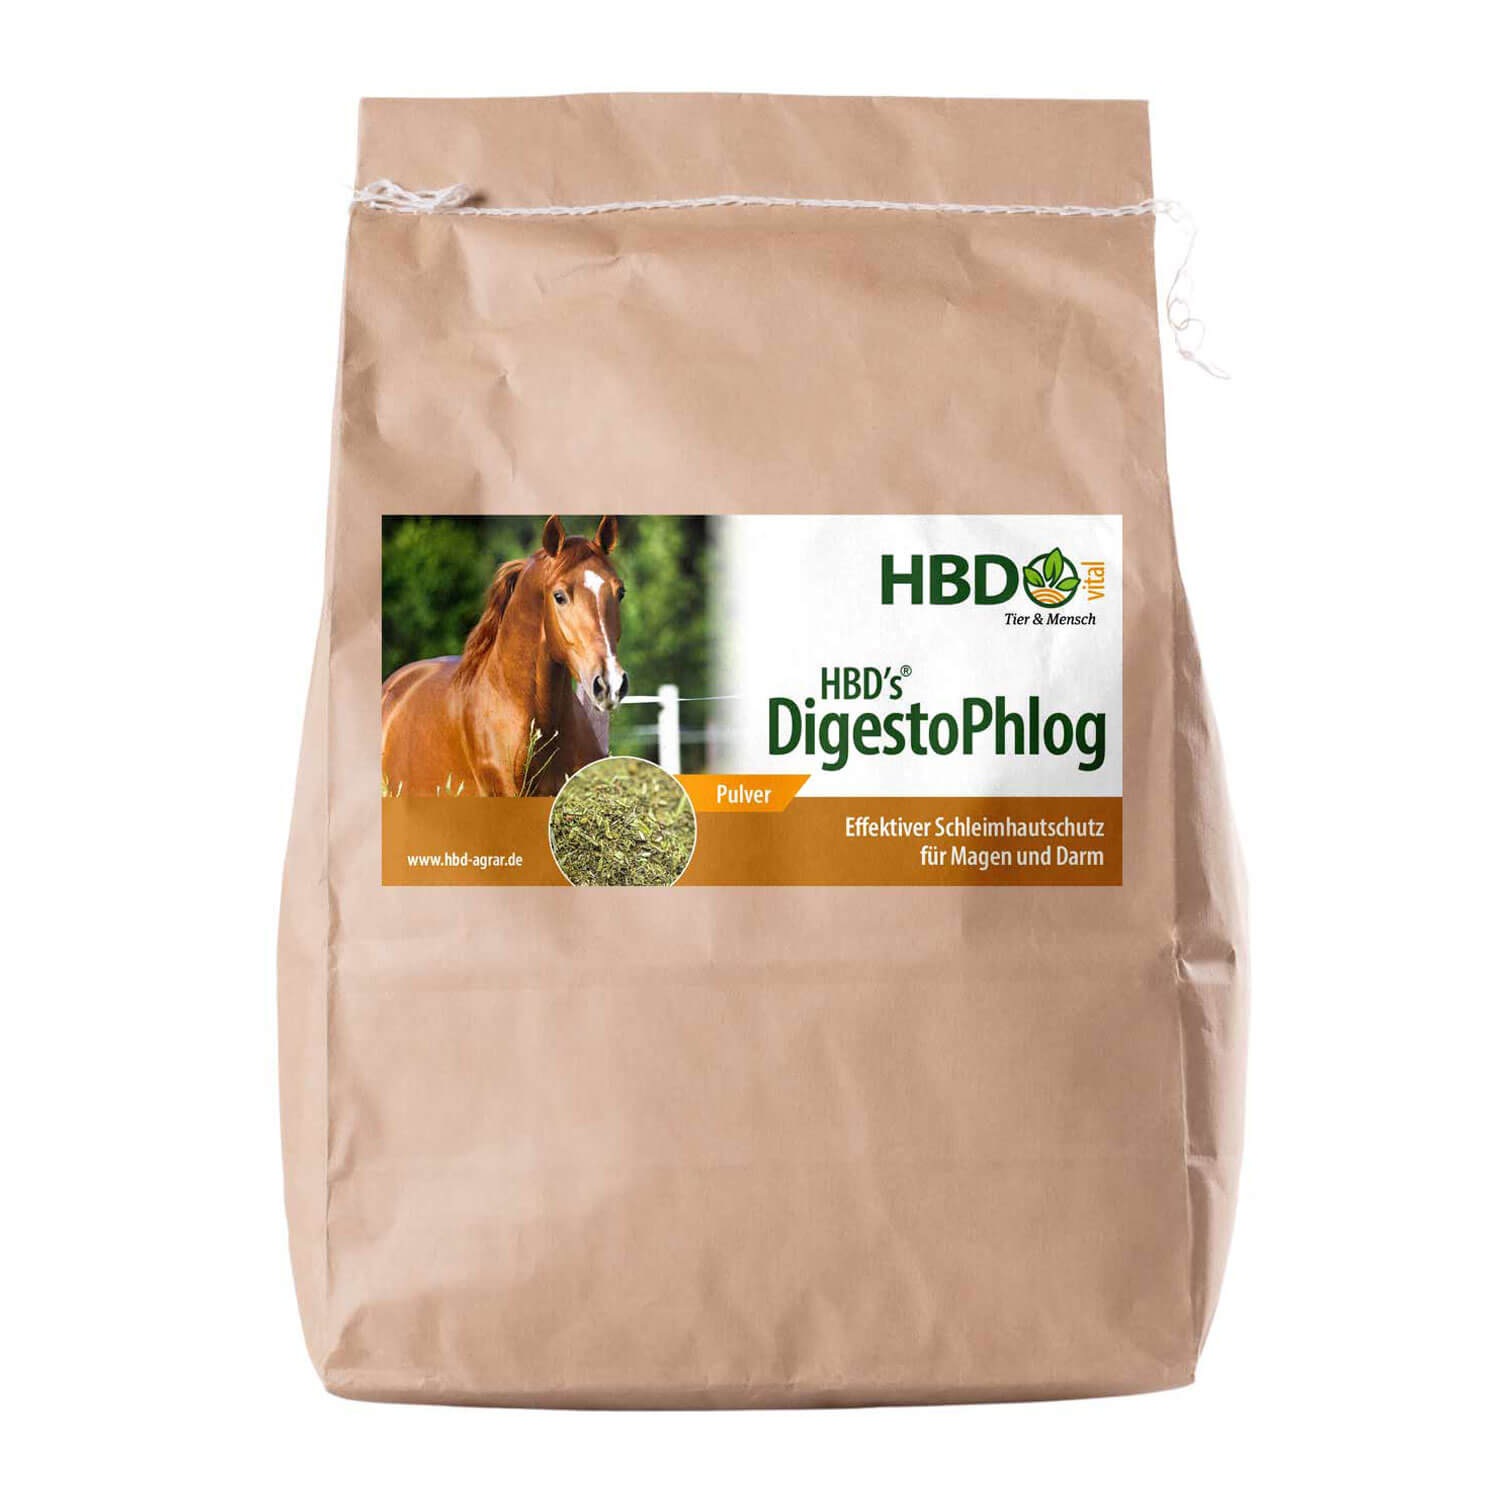 HBD-Agrar - HBD's® DigestoPhlog - Nutrazeutikum für den Magen des Pferdes